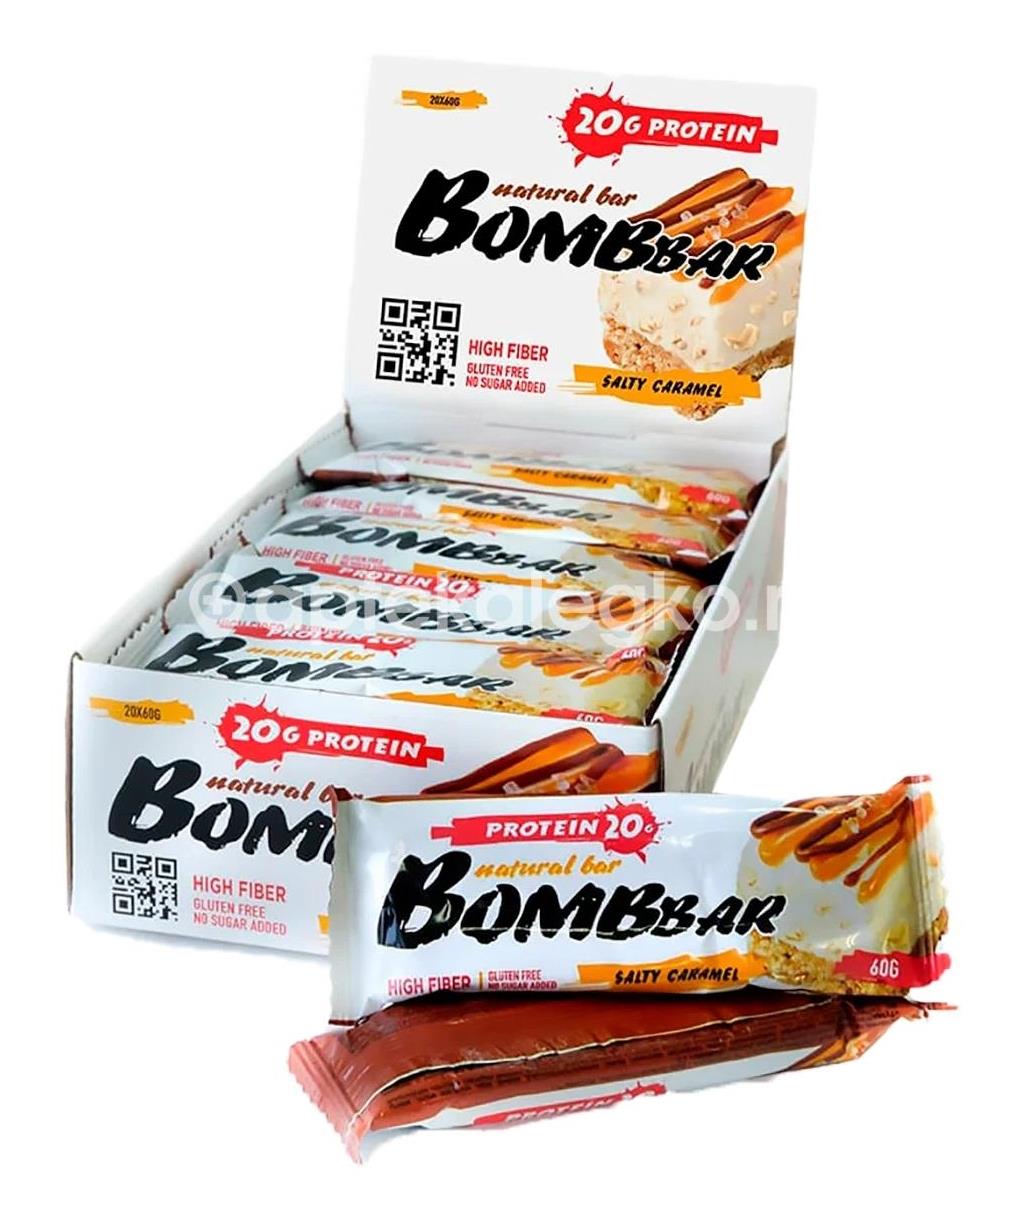 Bombar батончики купить. Ассорти протеиновых батончиков Bombbar - все вкусы, 19шт x 60г. Батончик Bombbar соленая карамель, 60 гр. Батончик Bombbar протеиновый (60 г соленая карамель). Бомбар соленая карамель.